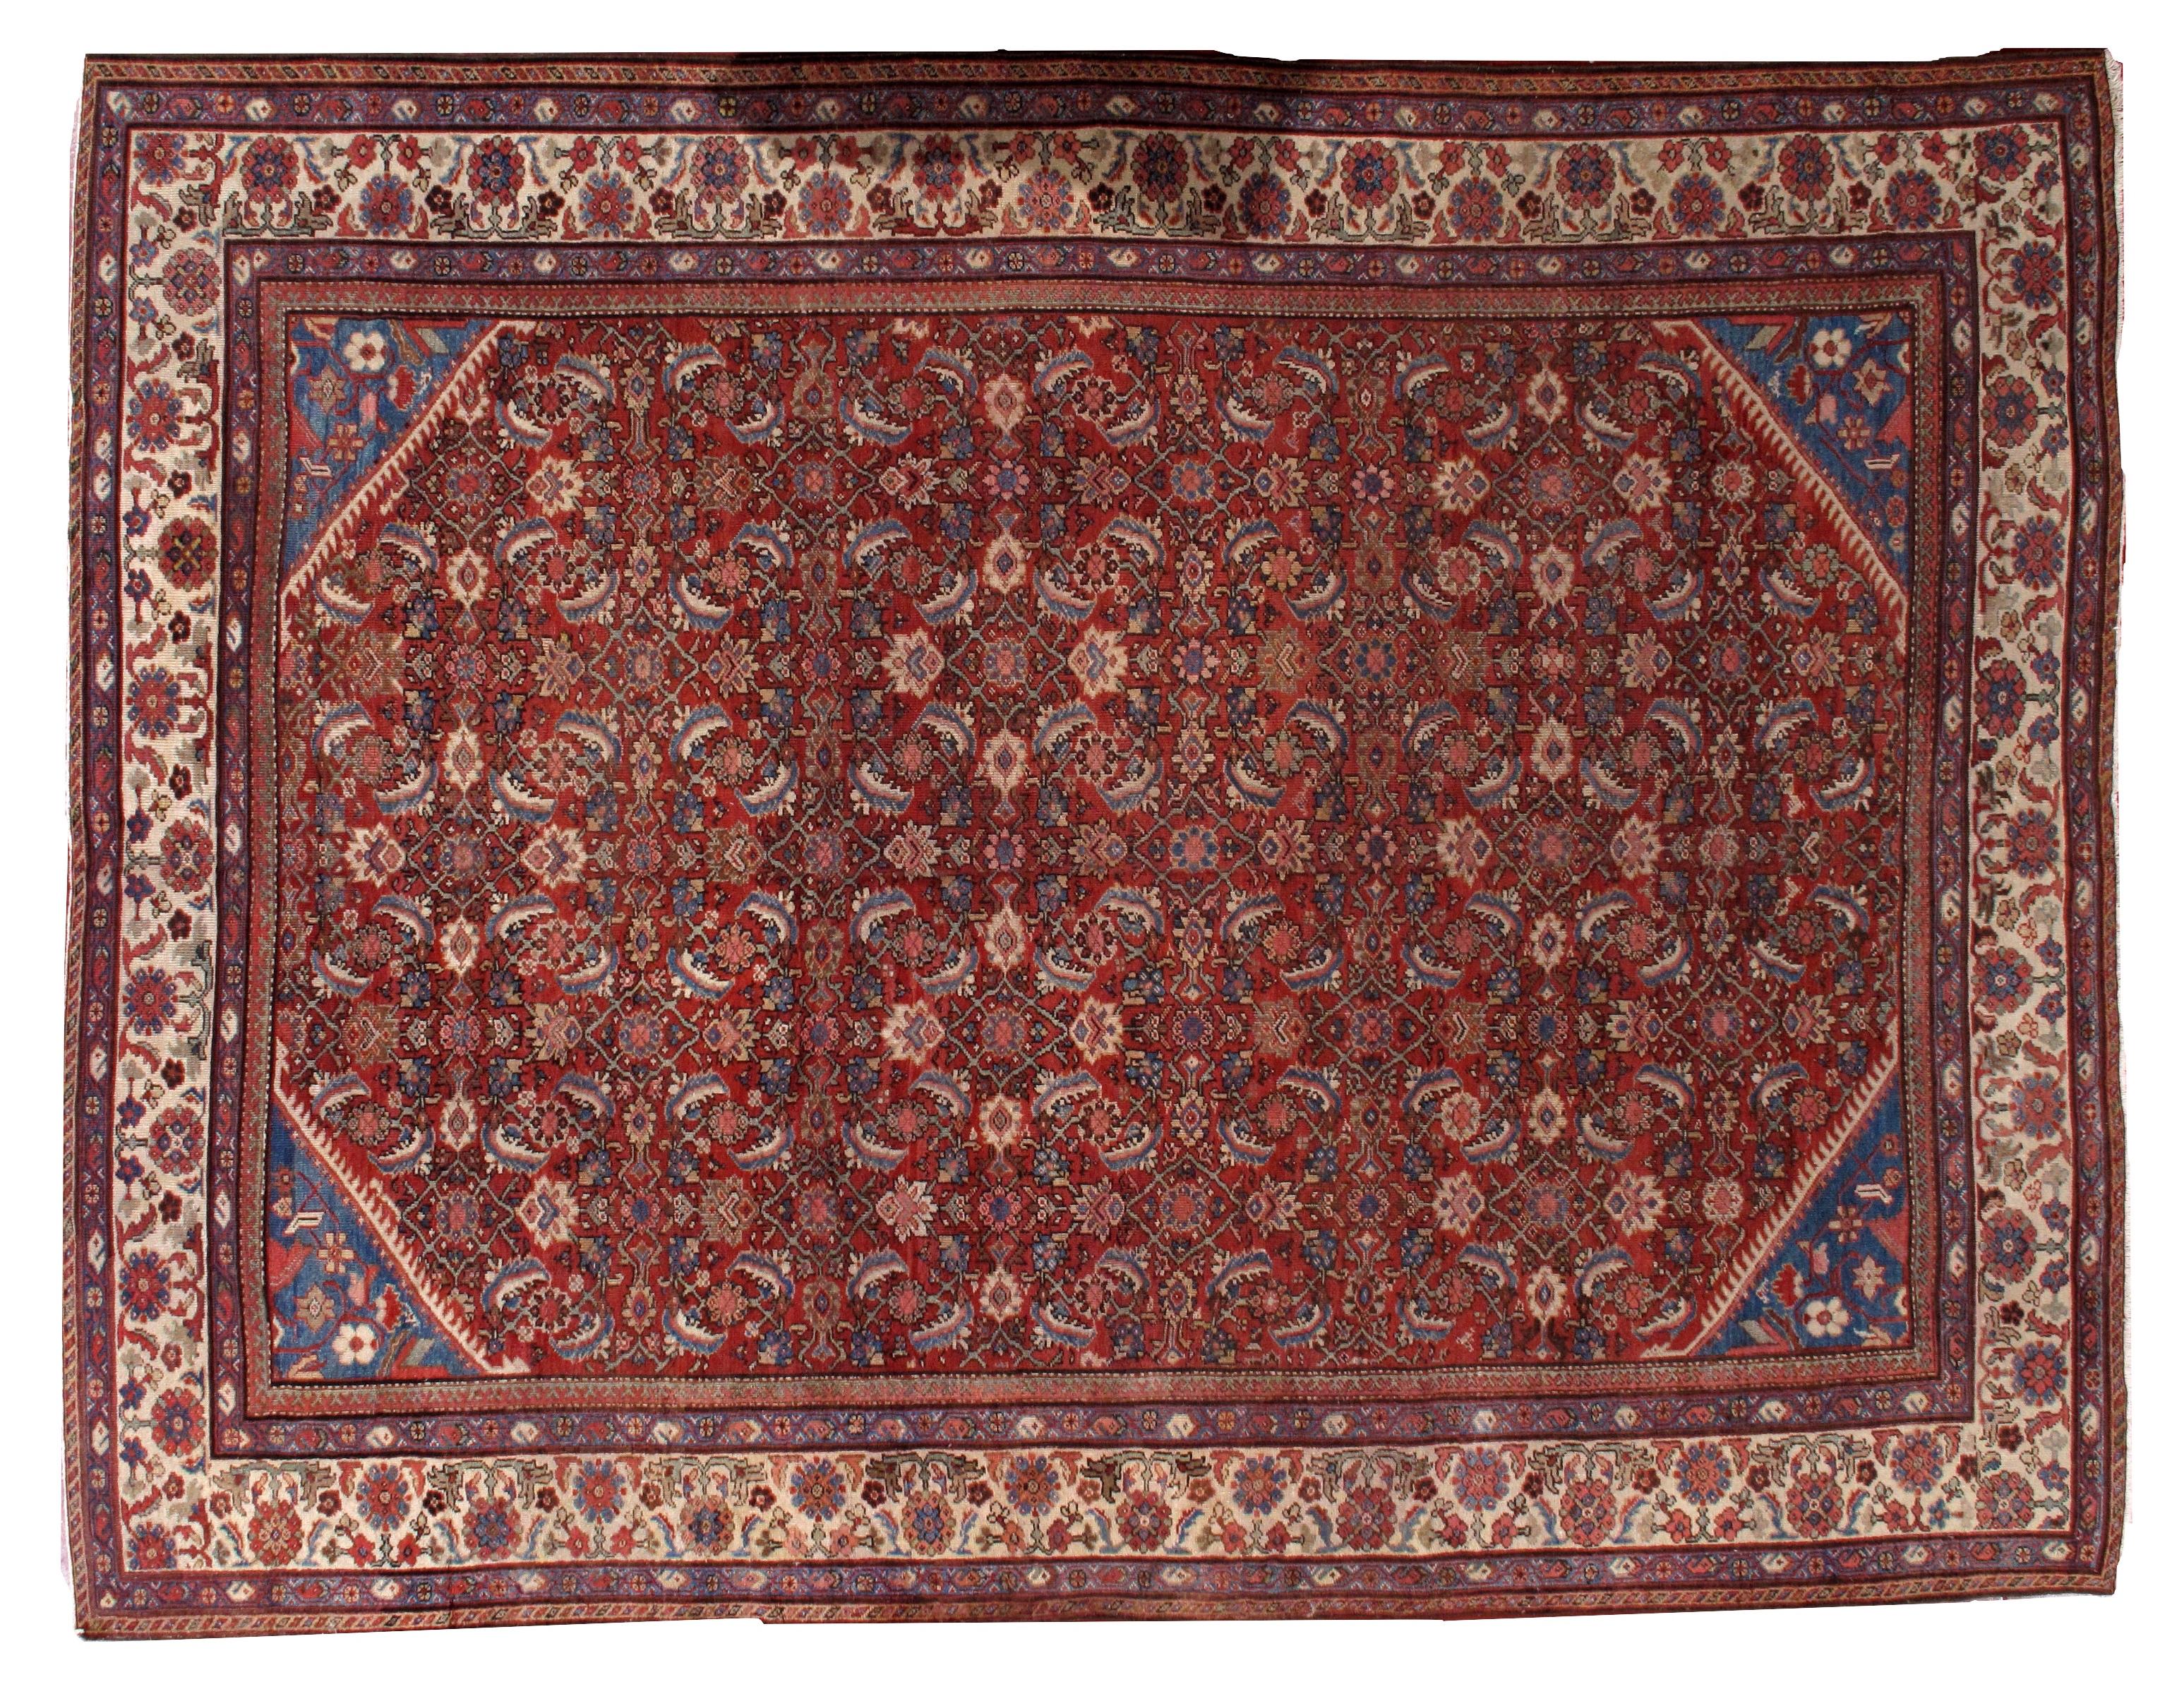 Antiker persischer Mahal-Teppich in gutem Zustand, leuchtend rote Farbe mit einigen blauen und cremefarbenen Akzenten.